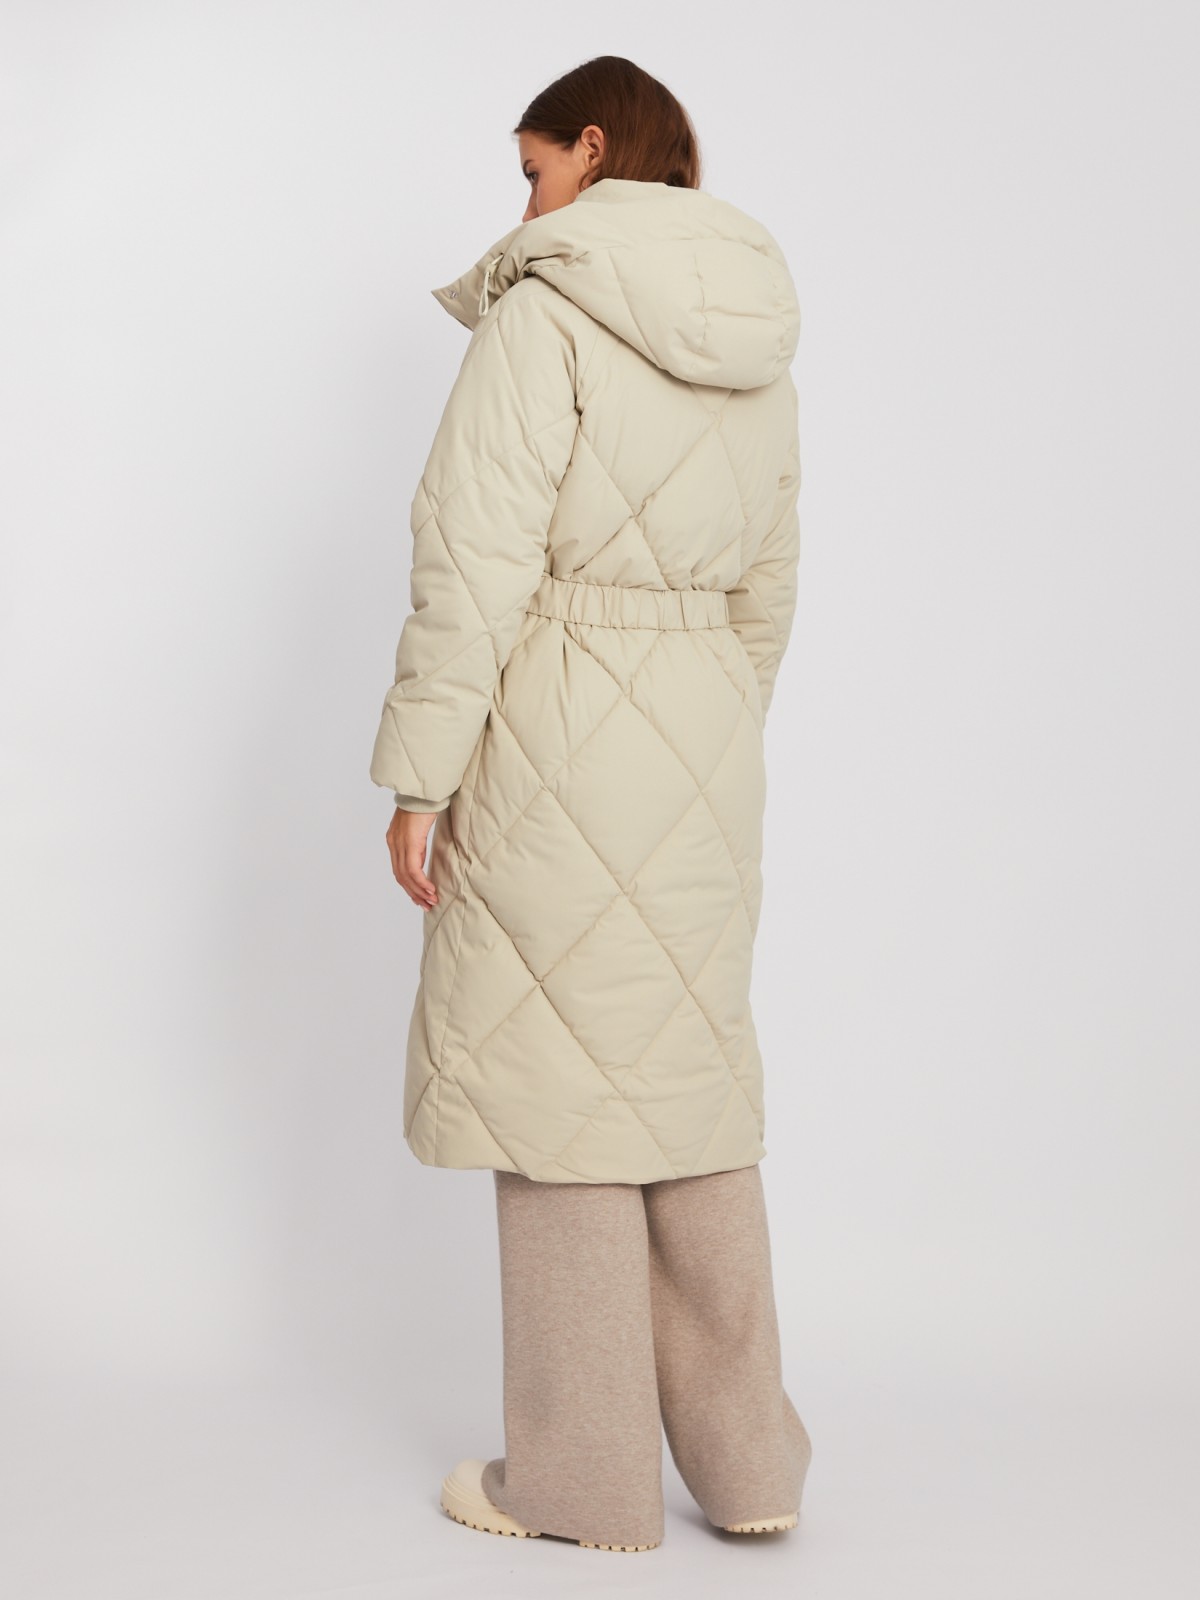 Тёплая стёганая куртка-пальто с капюшоном и поясом zolla 023425272134, цвет бежевый, размер XS - фото 6